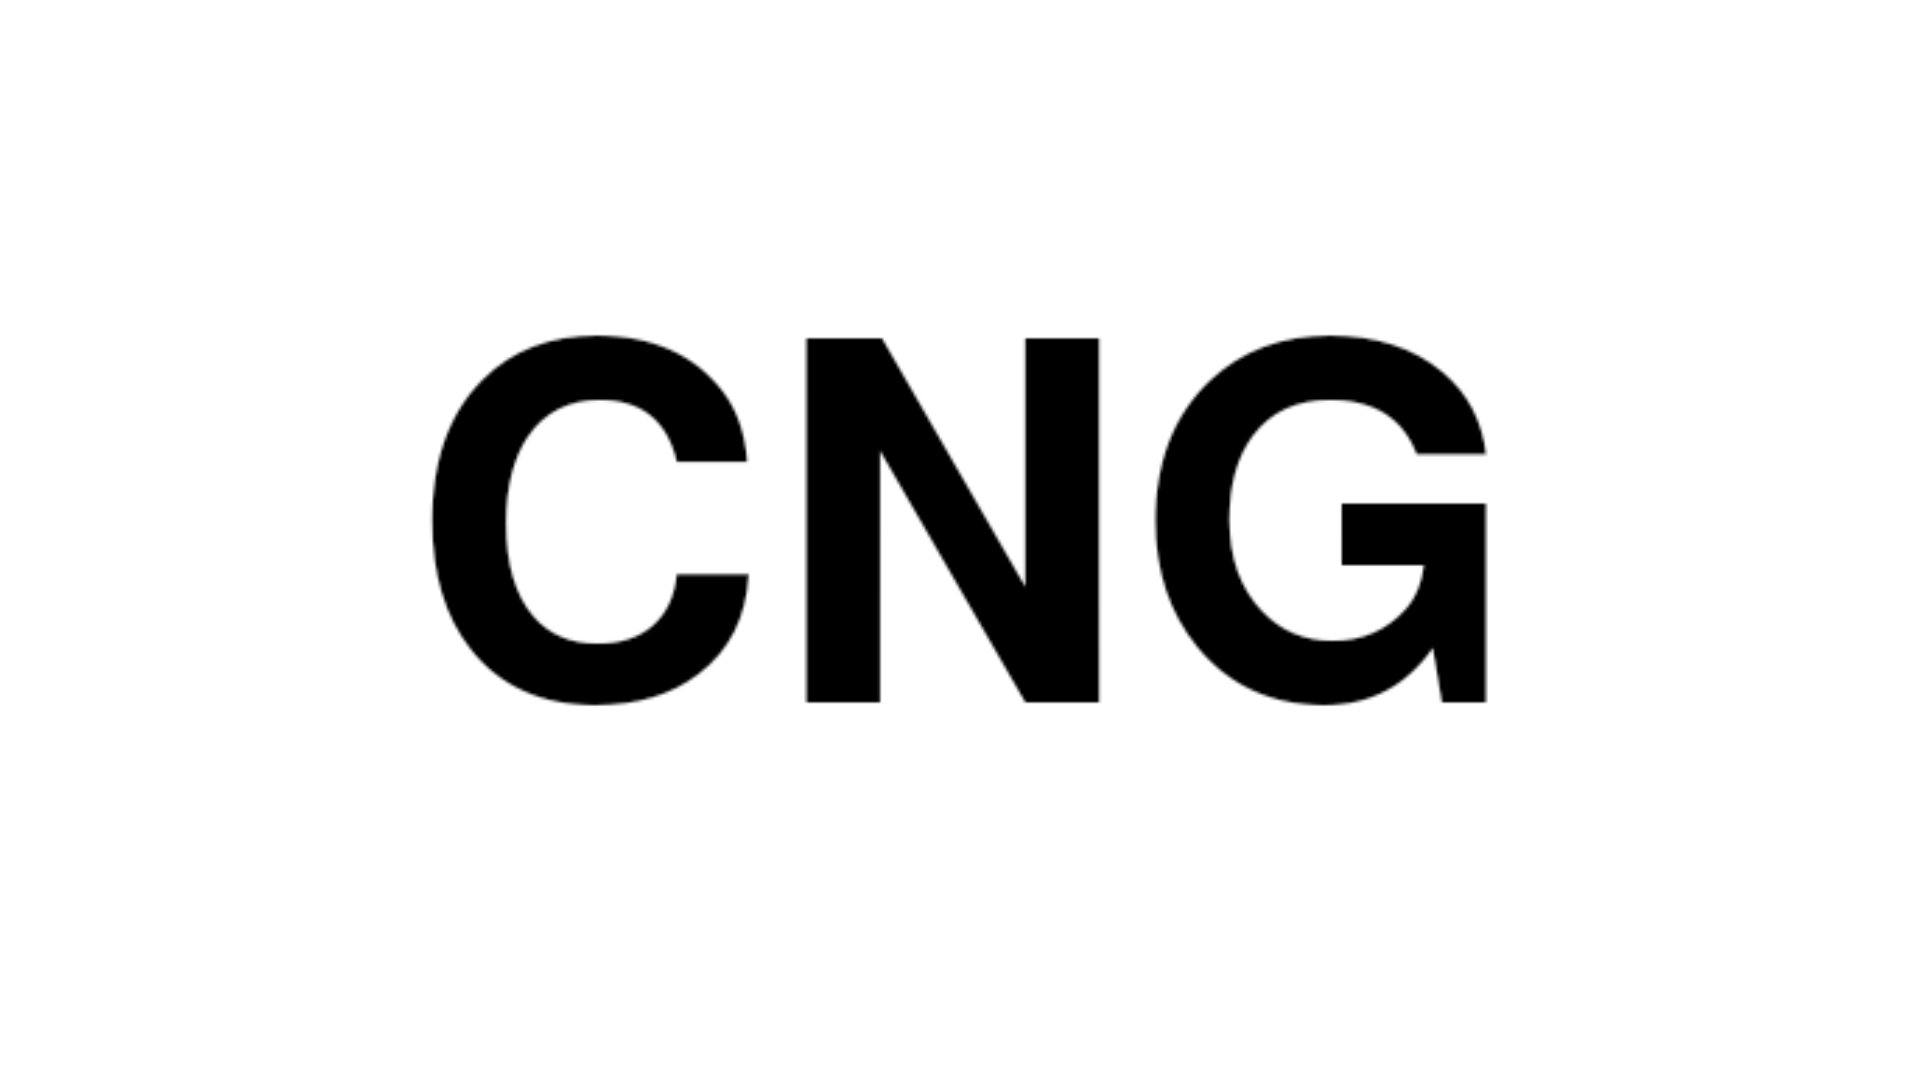 Mahanagar Gas Limited launches 'MGL CNG Mahotsav'